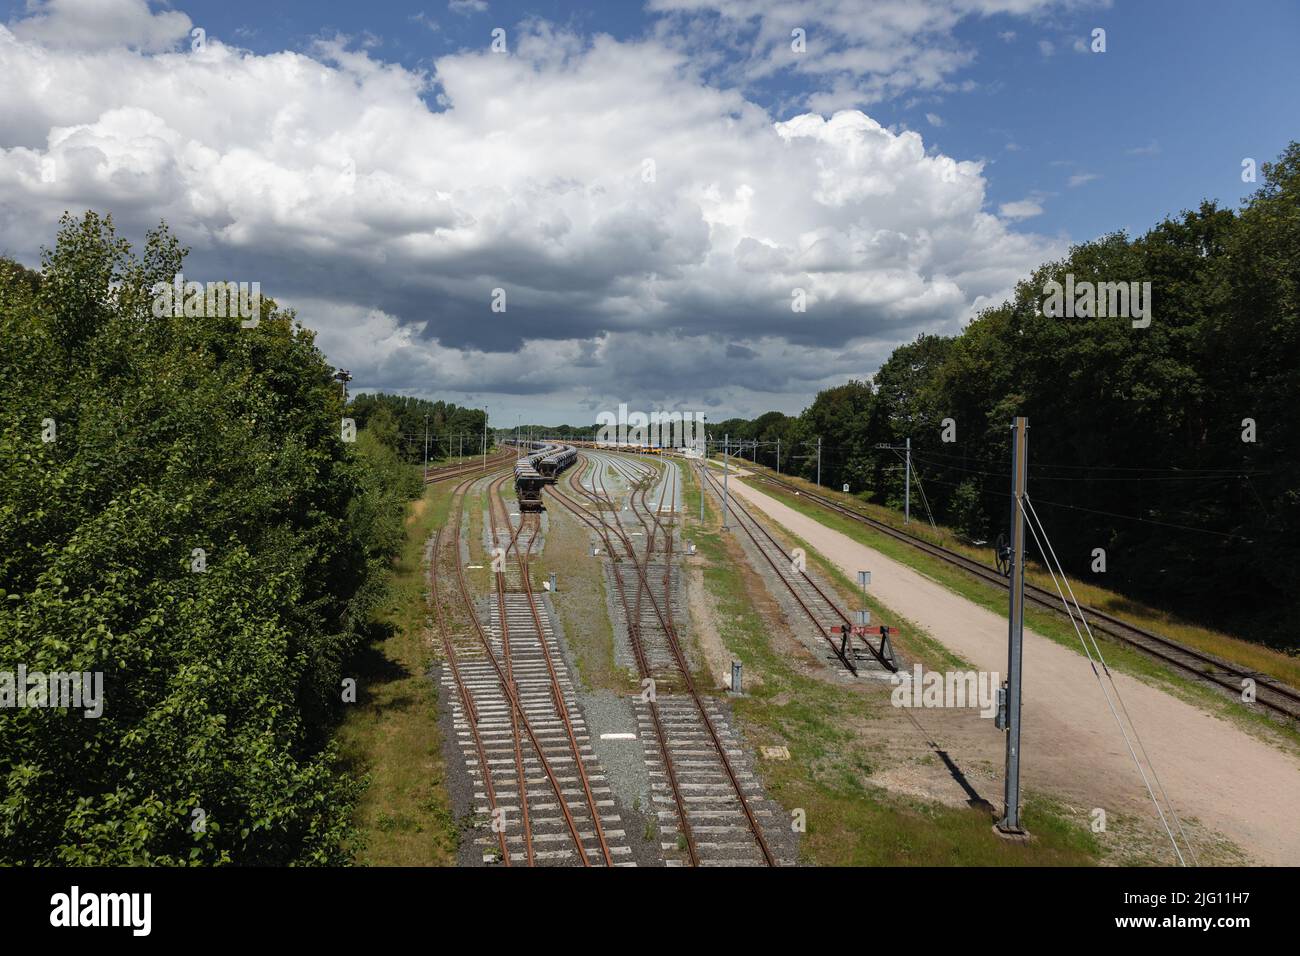 Il vecchio cantiere ferroviario con carri e convogli in deposito presso il villaggio chiamato Onnen, provincia di Drenthe, Paesi Bassi Foto Stock